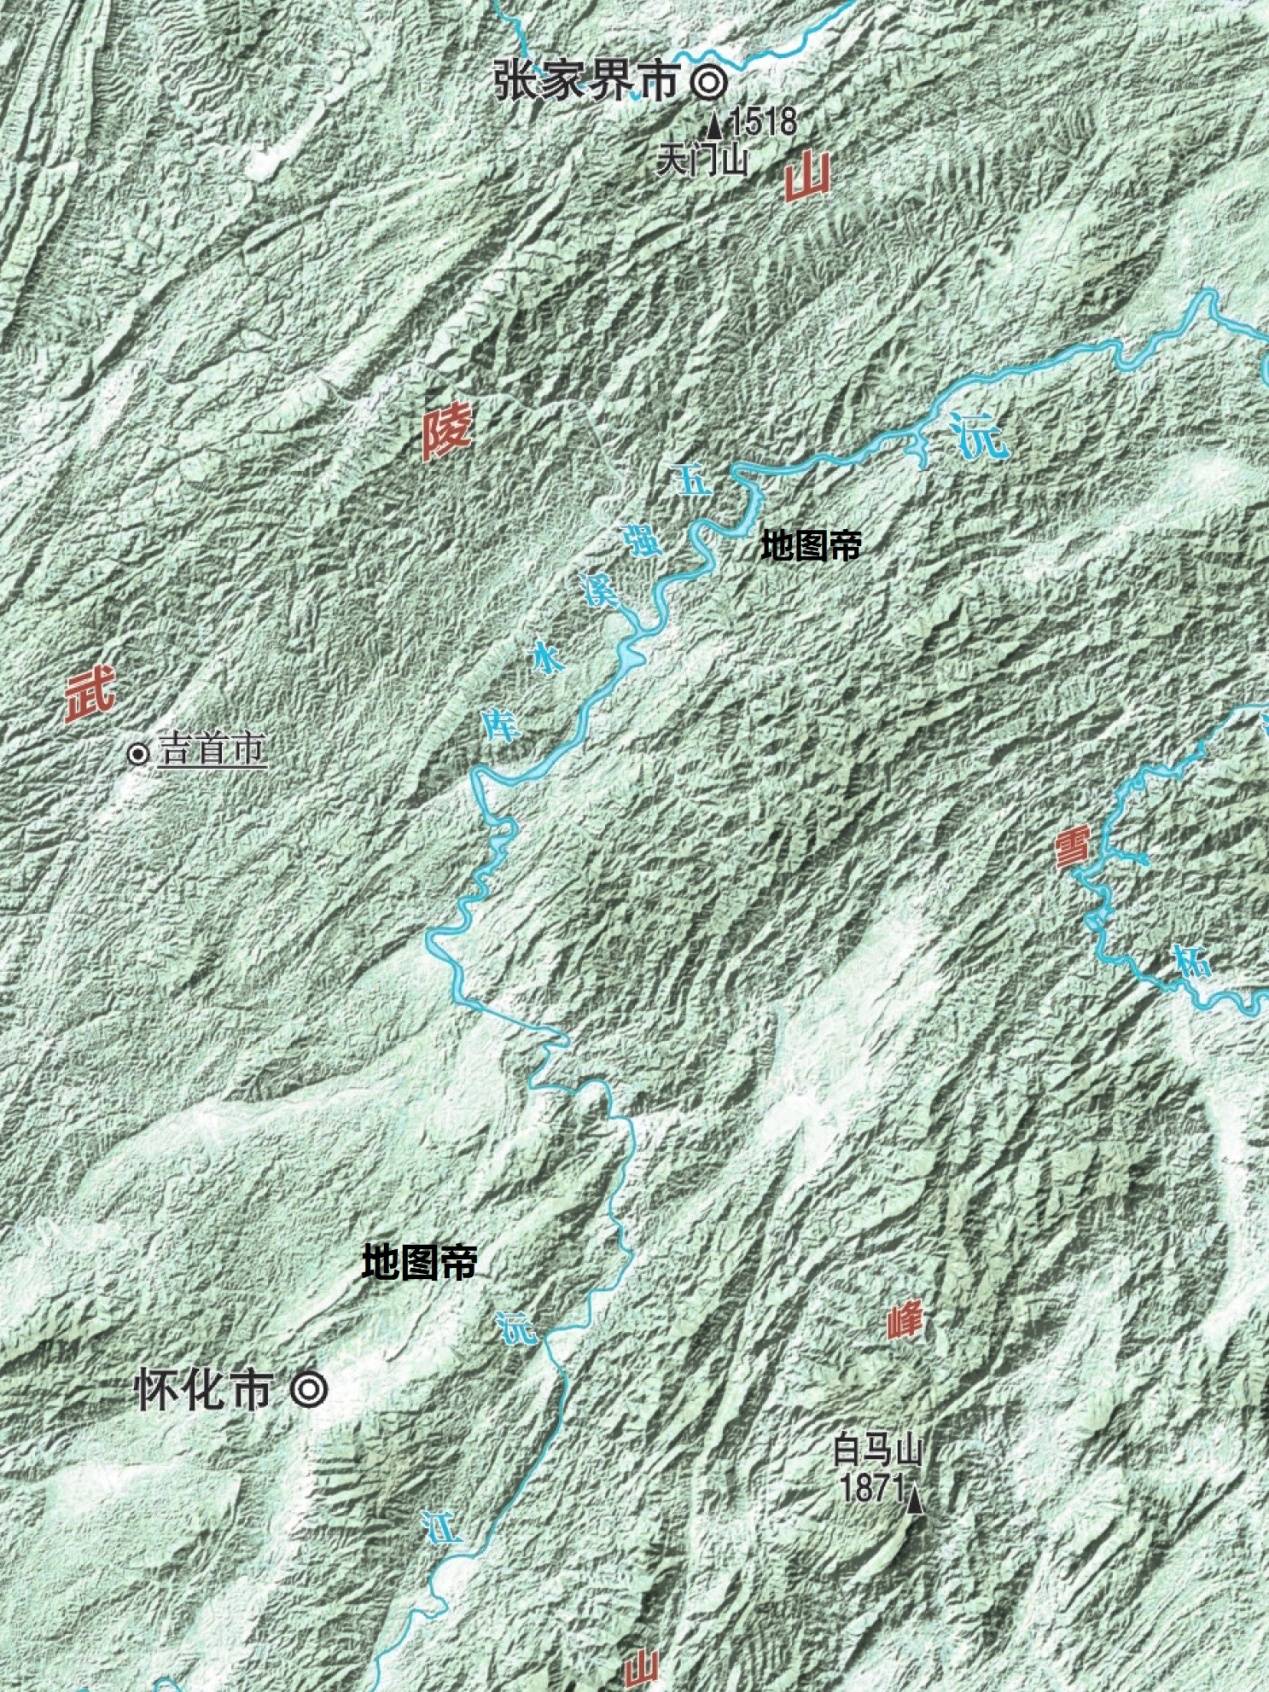 沅江的西北是武陵山,东南是雪峰山,皆呈东北—西南走向.